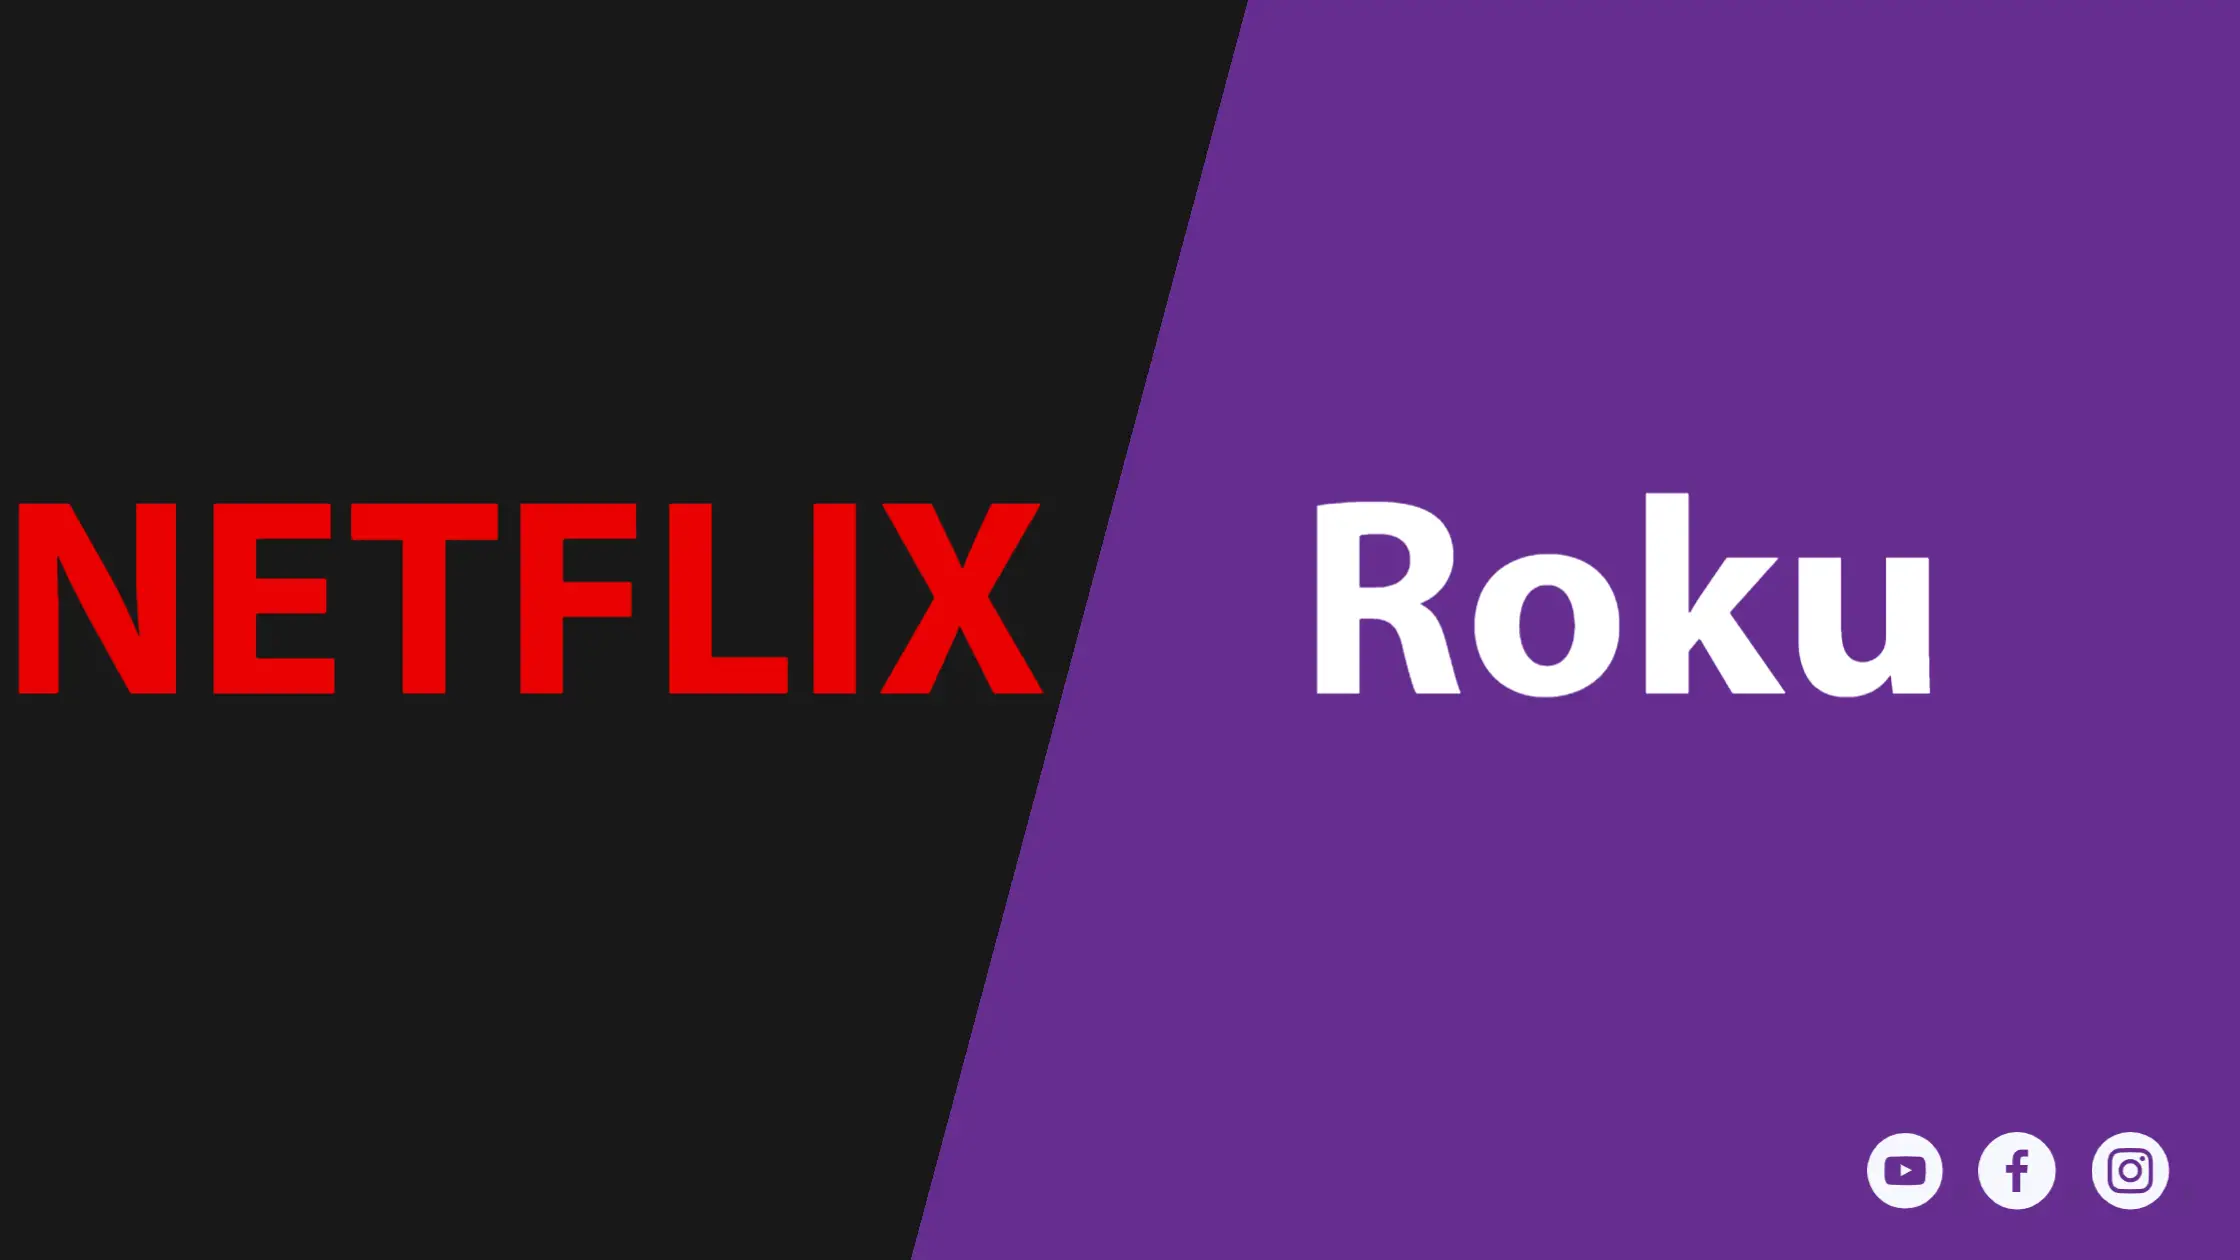 Is Netflix Free on Roku